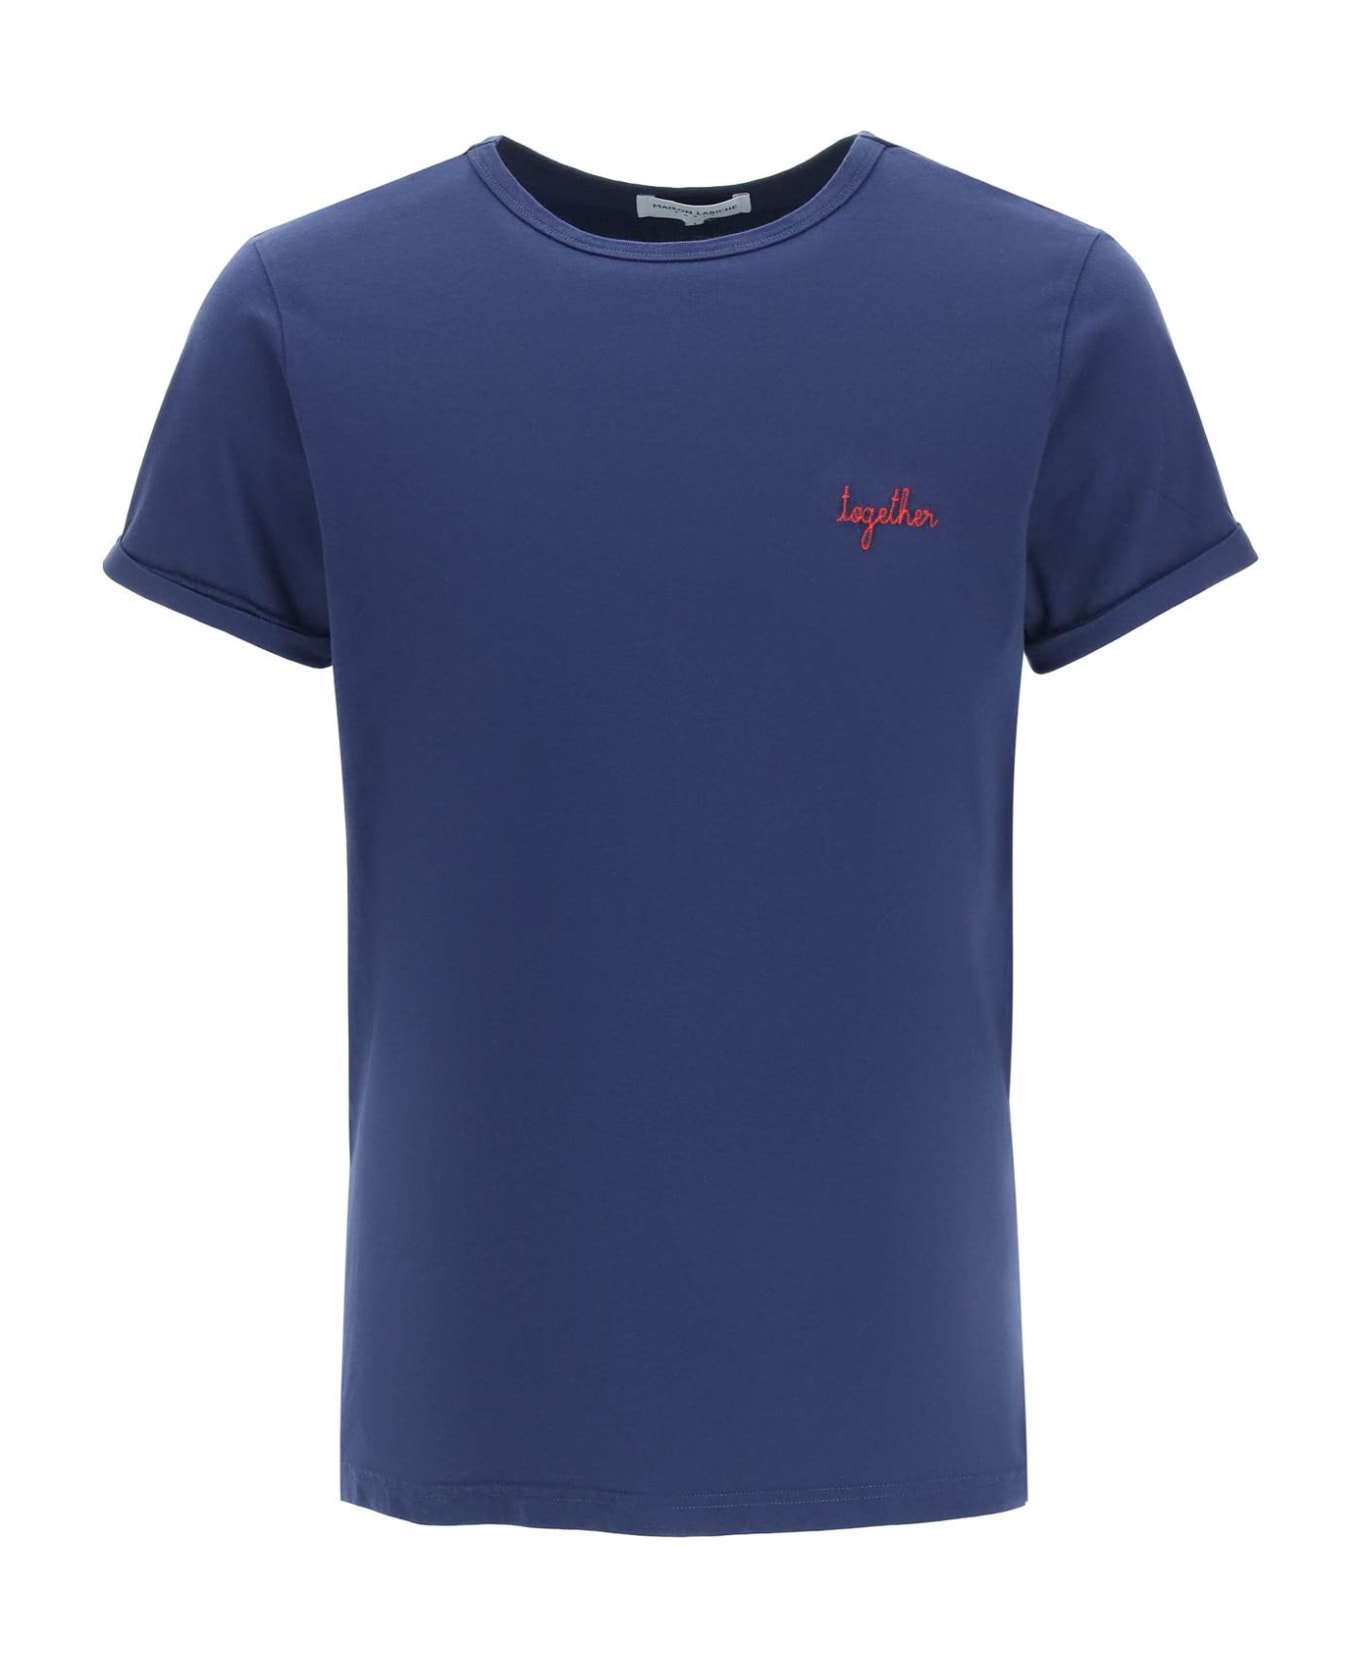 Maison Labiche "together" Villiers T-shirt - NAVY (Blue)